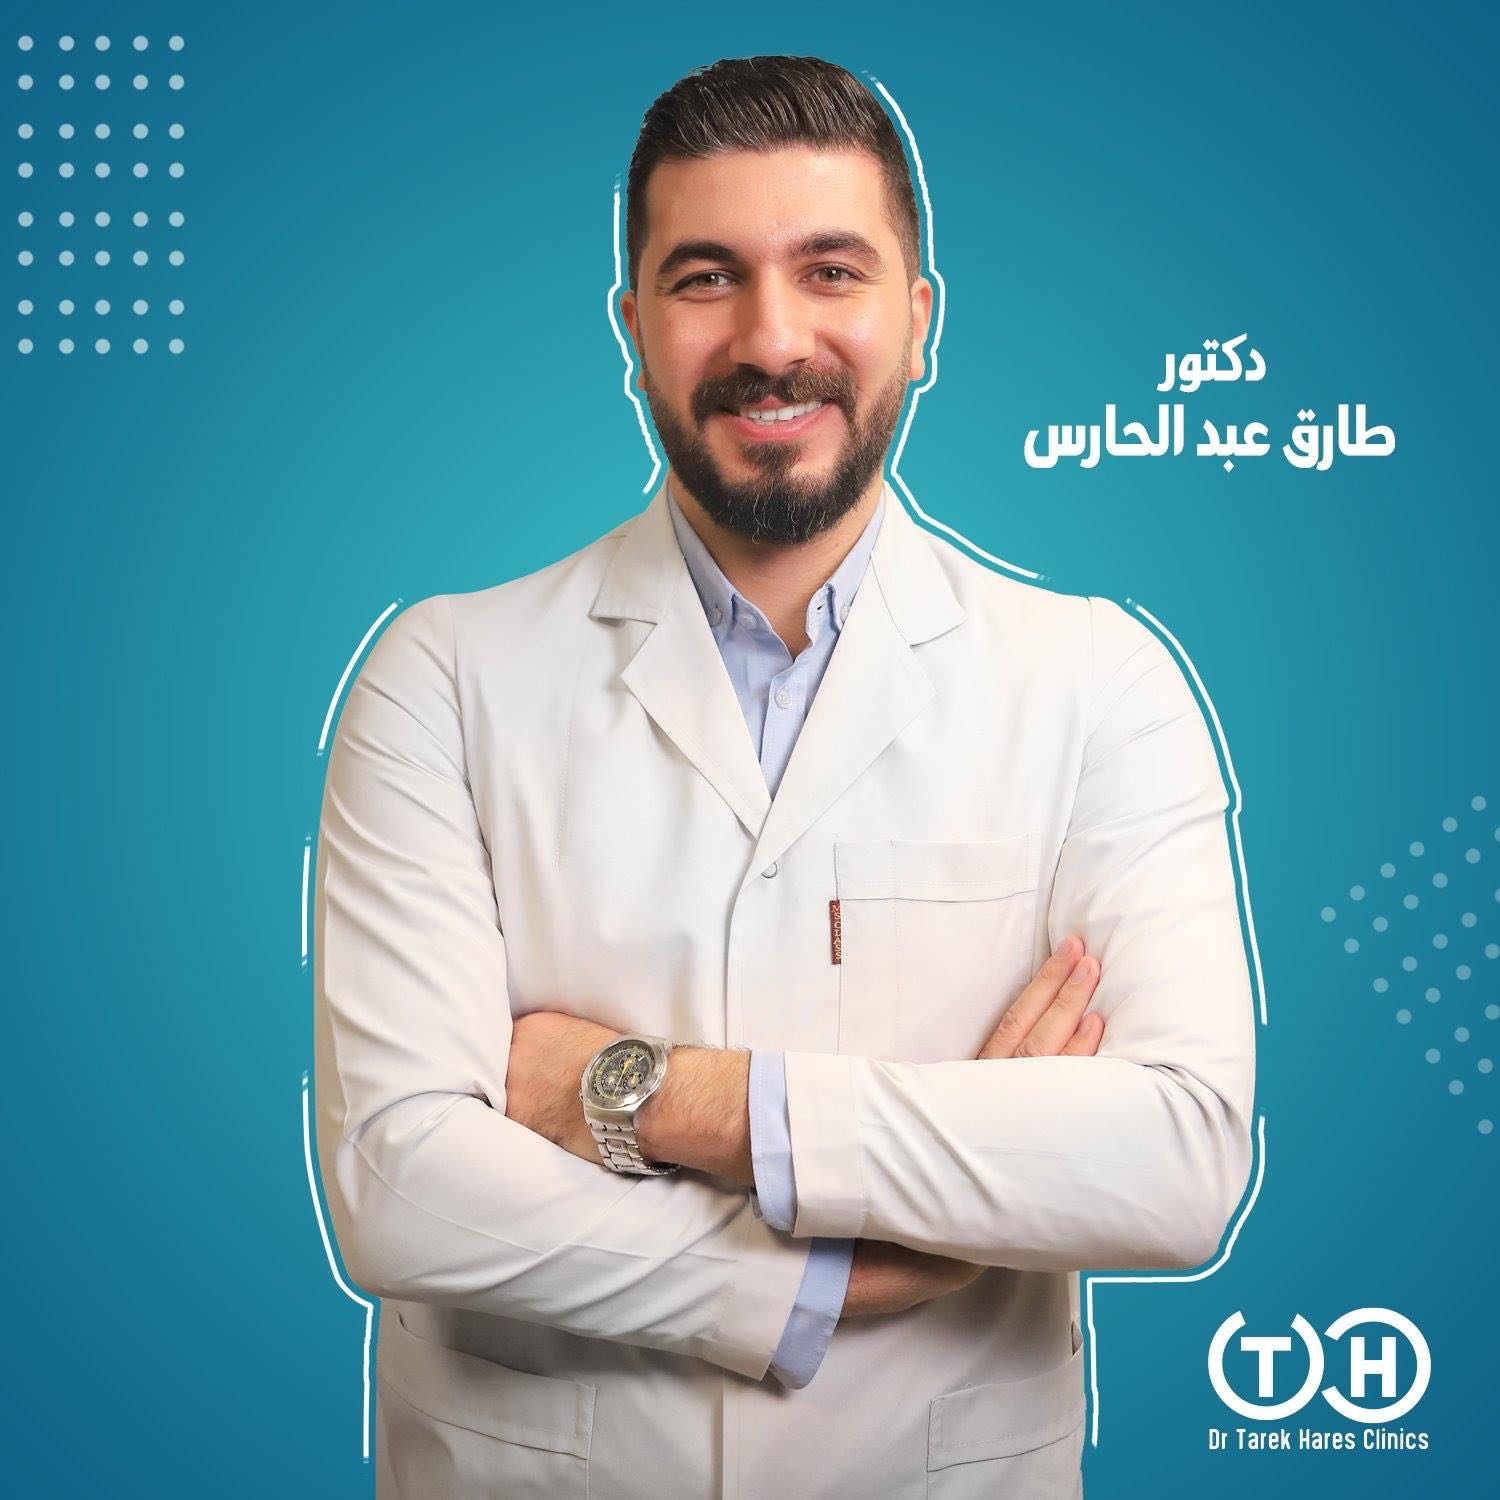 Dr. Tarek Abd El Hares